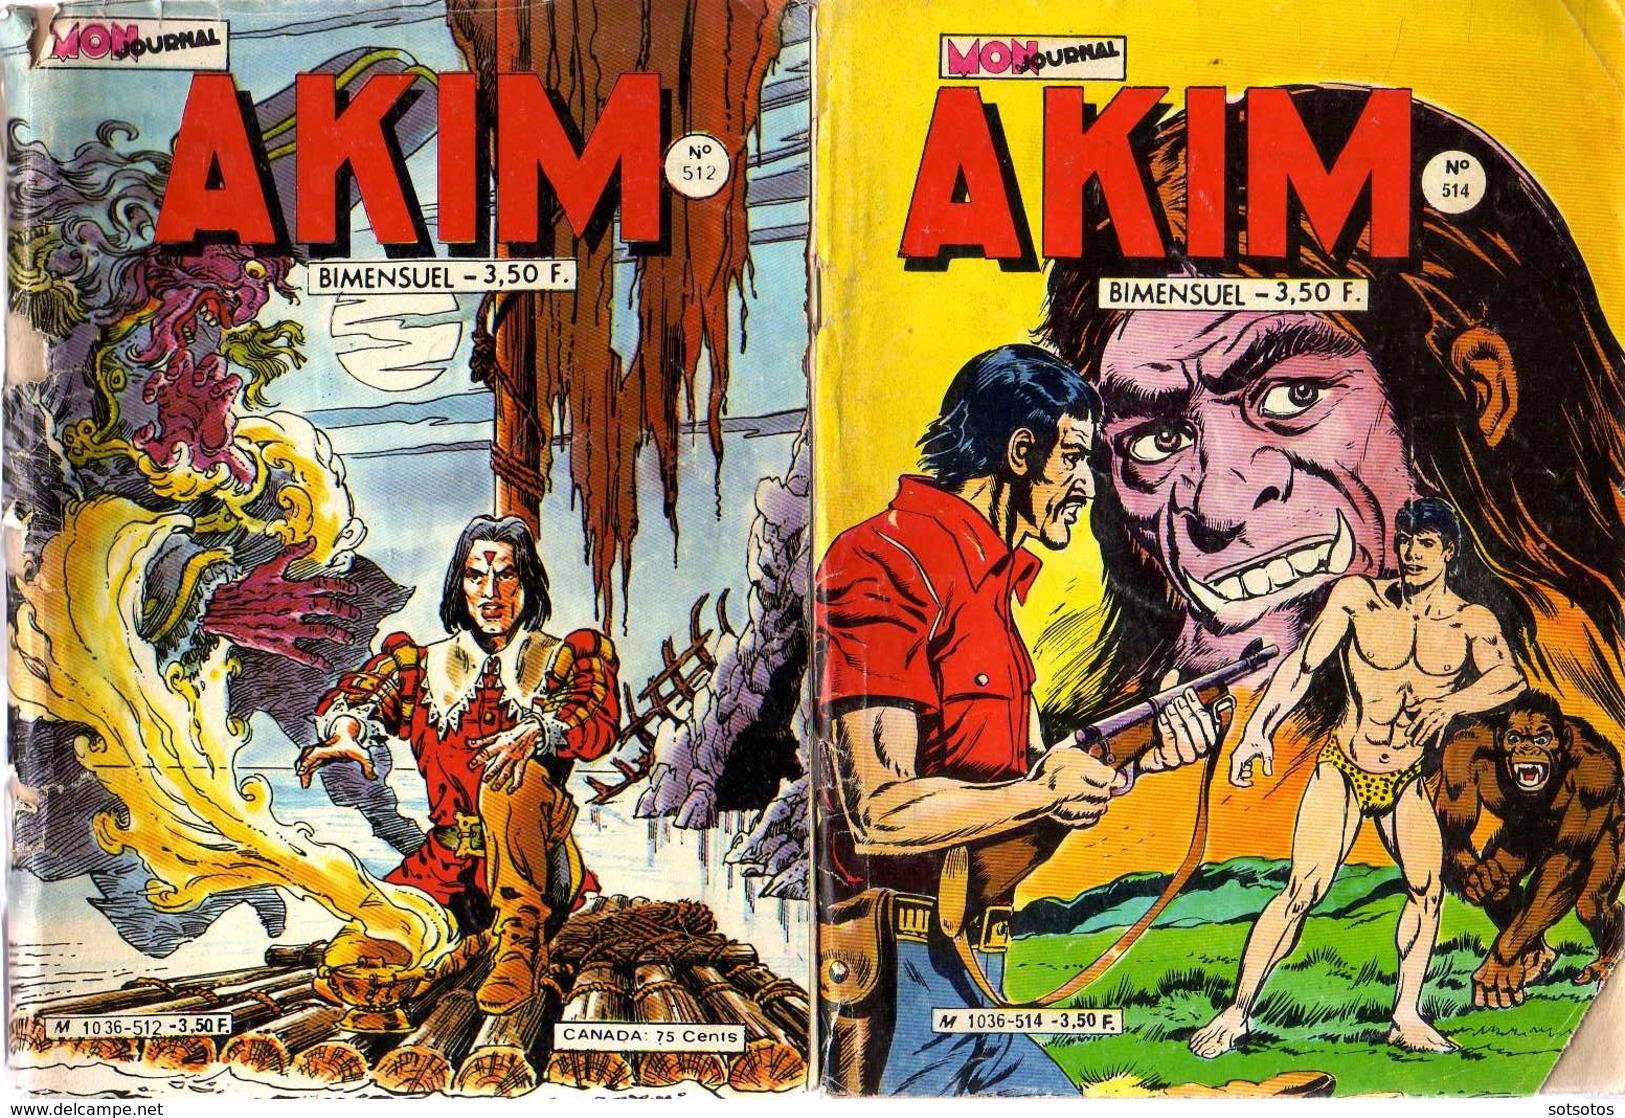 AKIM  #512 & 514 (1980/1) - Mon Journal